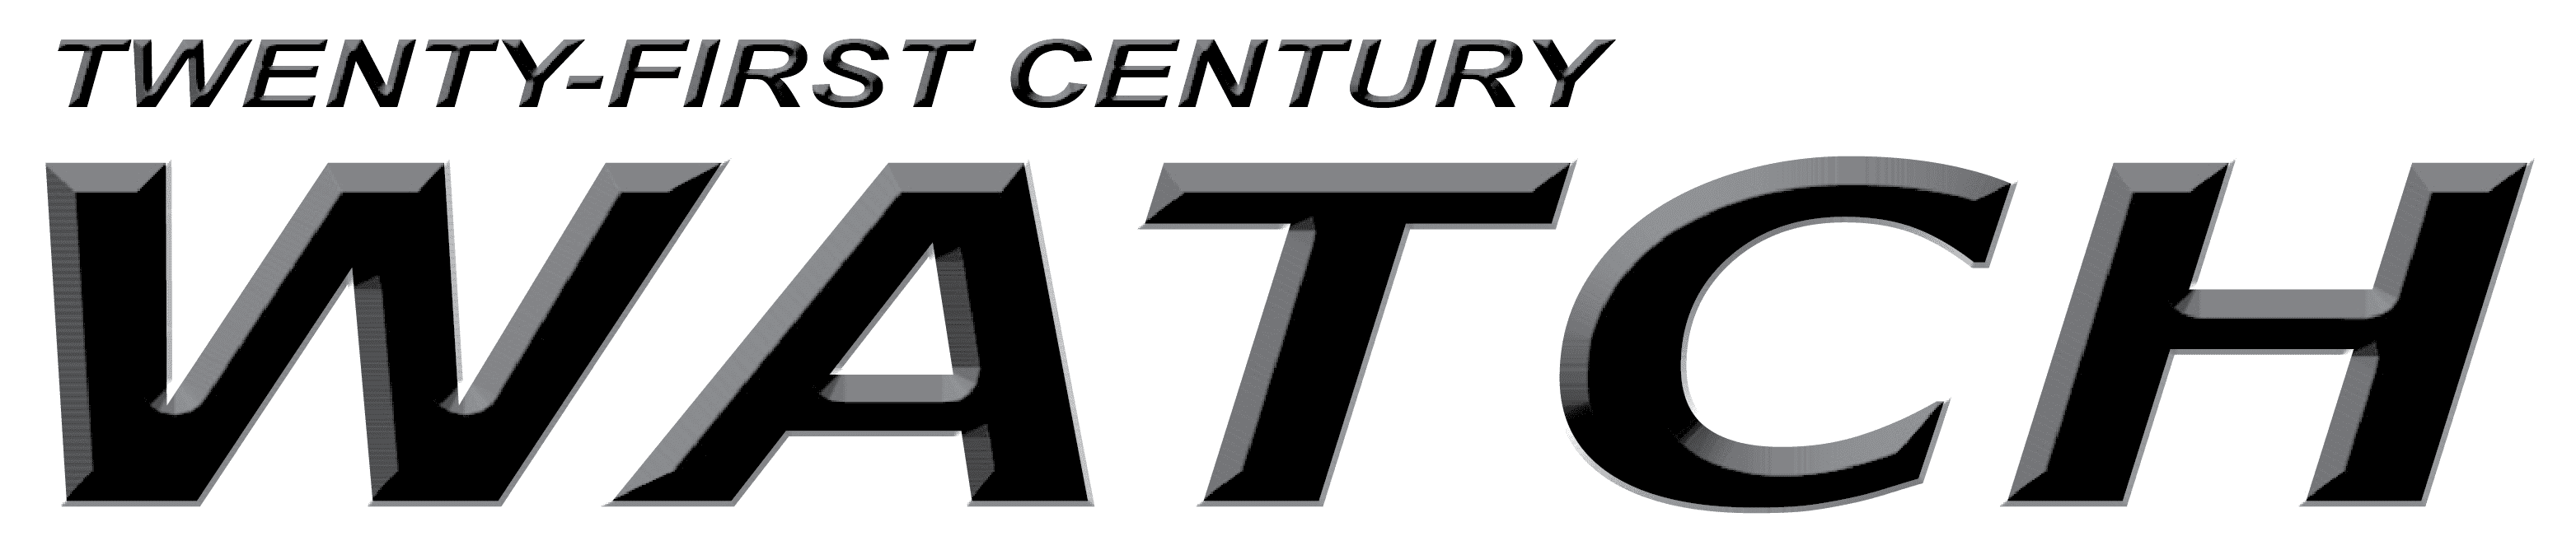 Twenty-First Century Watch